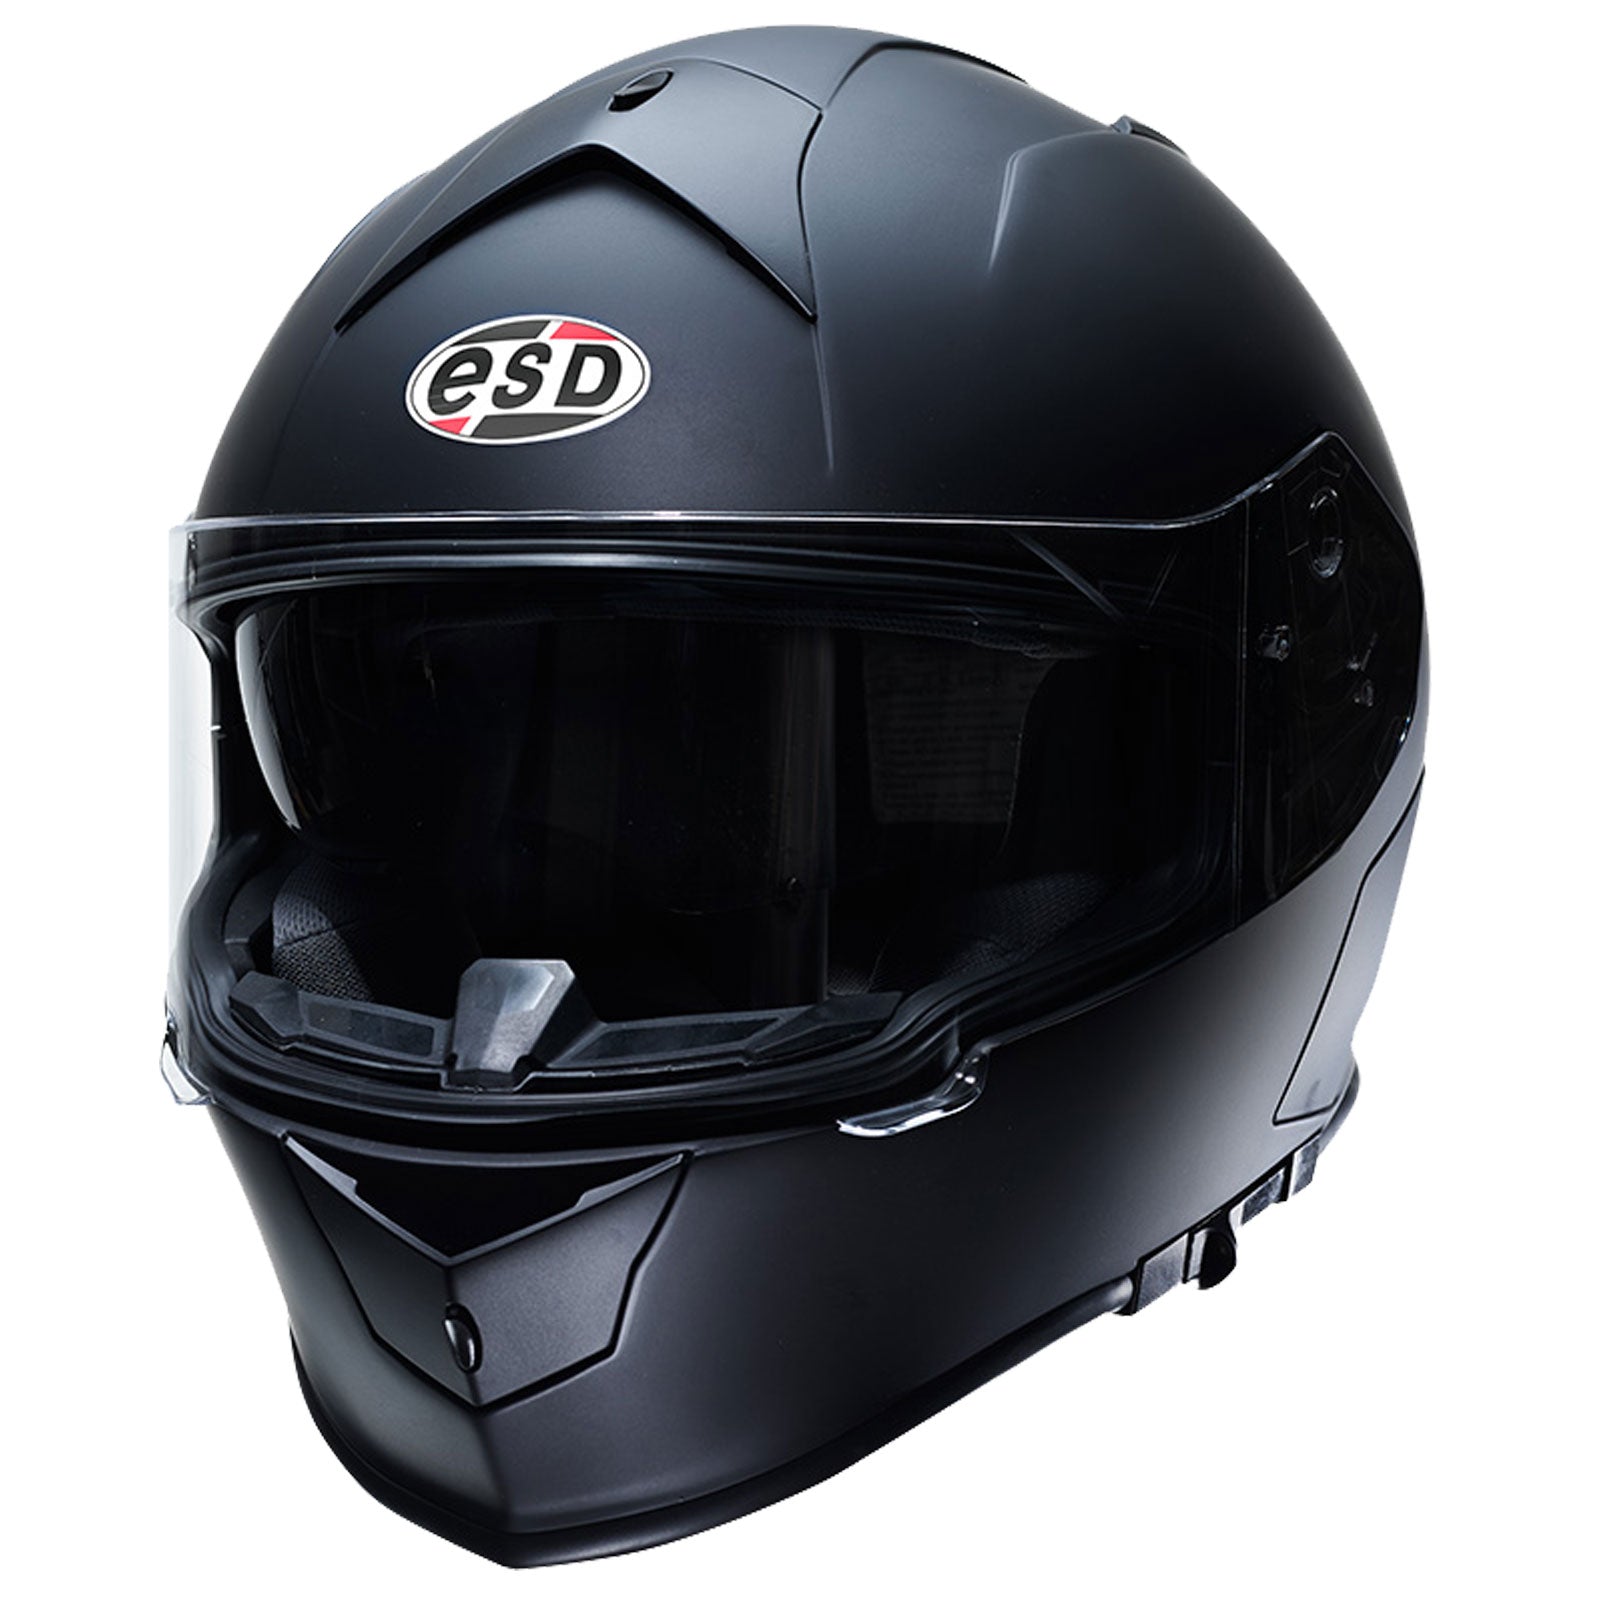 Eldorado Mens Motorcycle Helmet E20 Full Face